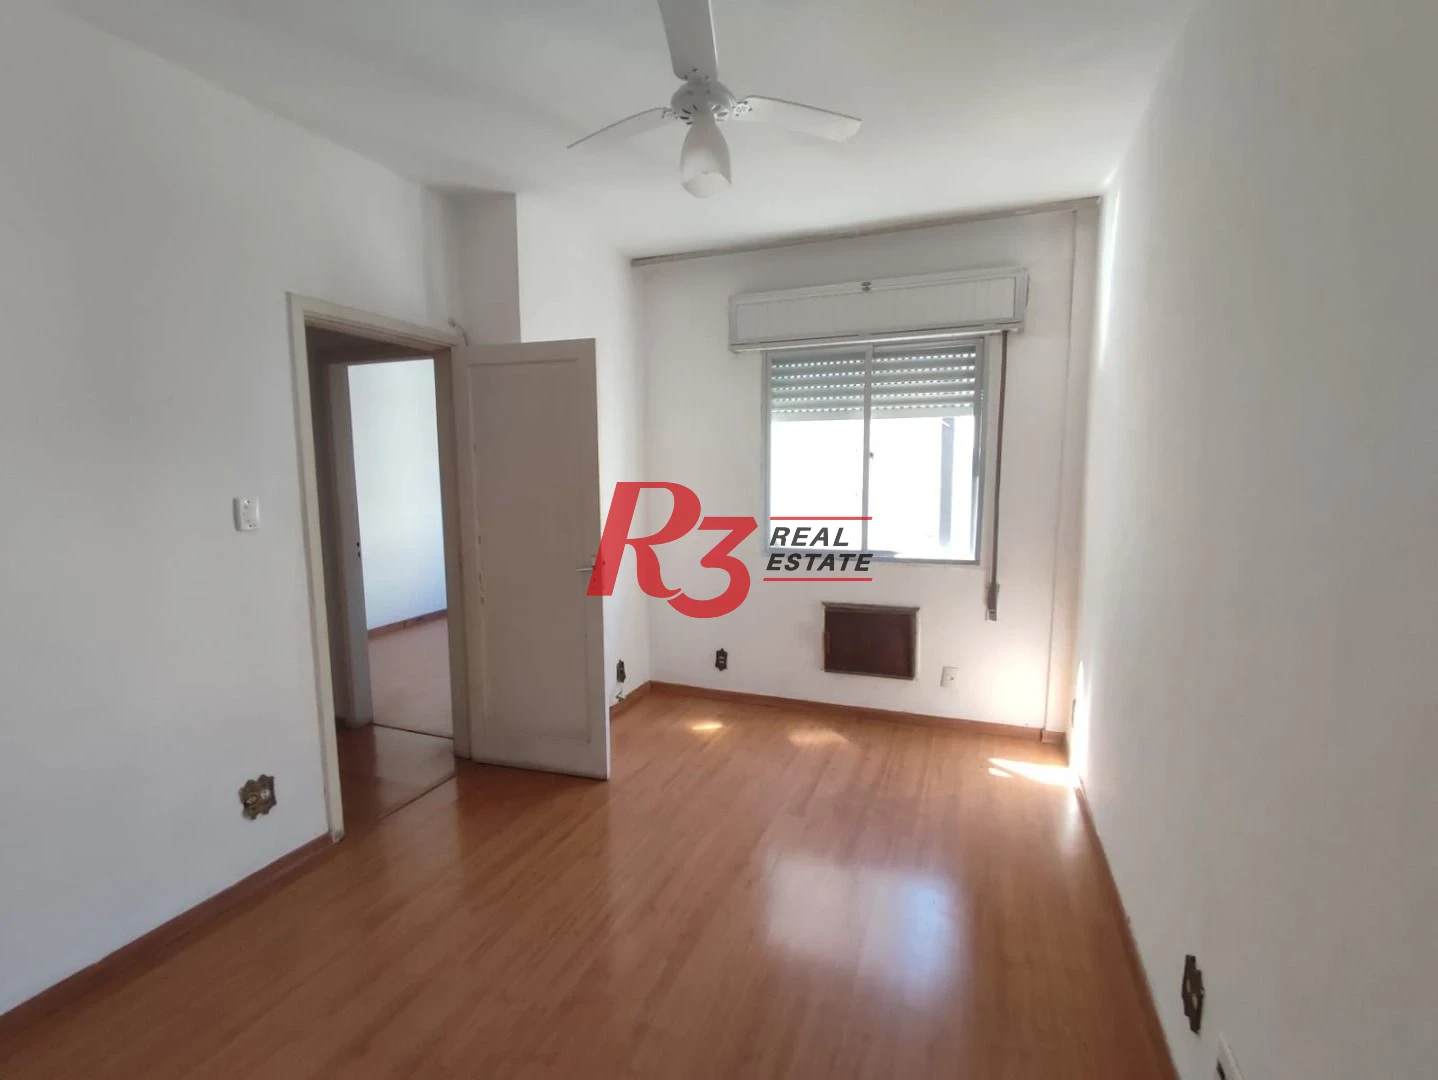 Apartamento com 2 dormitórios à venda, 118 m² por R$ 500.000,00 - Gonzaga - Santos/SP